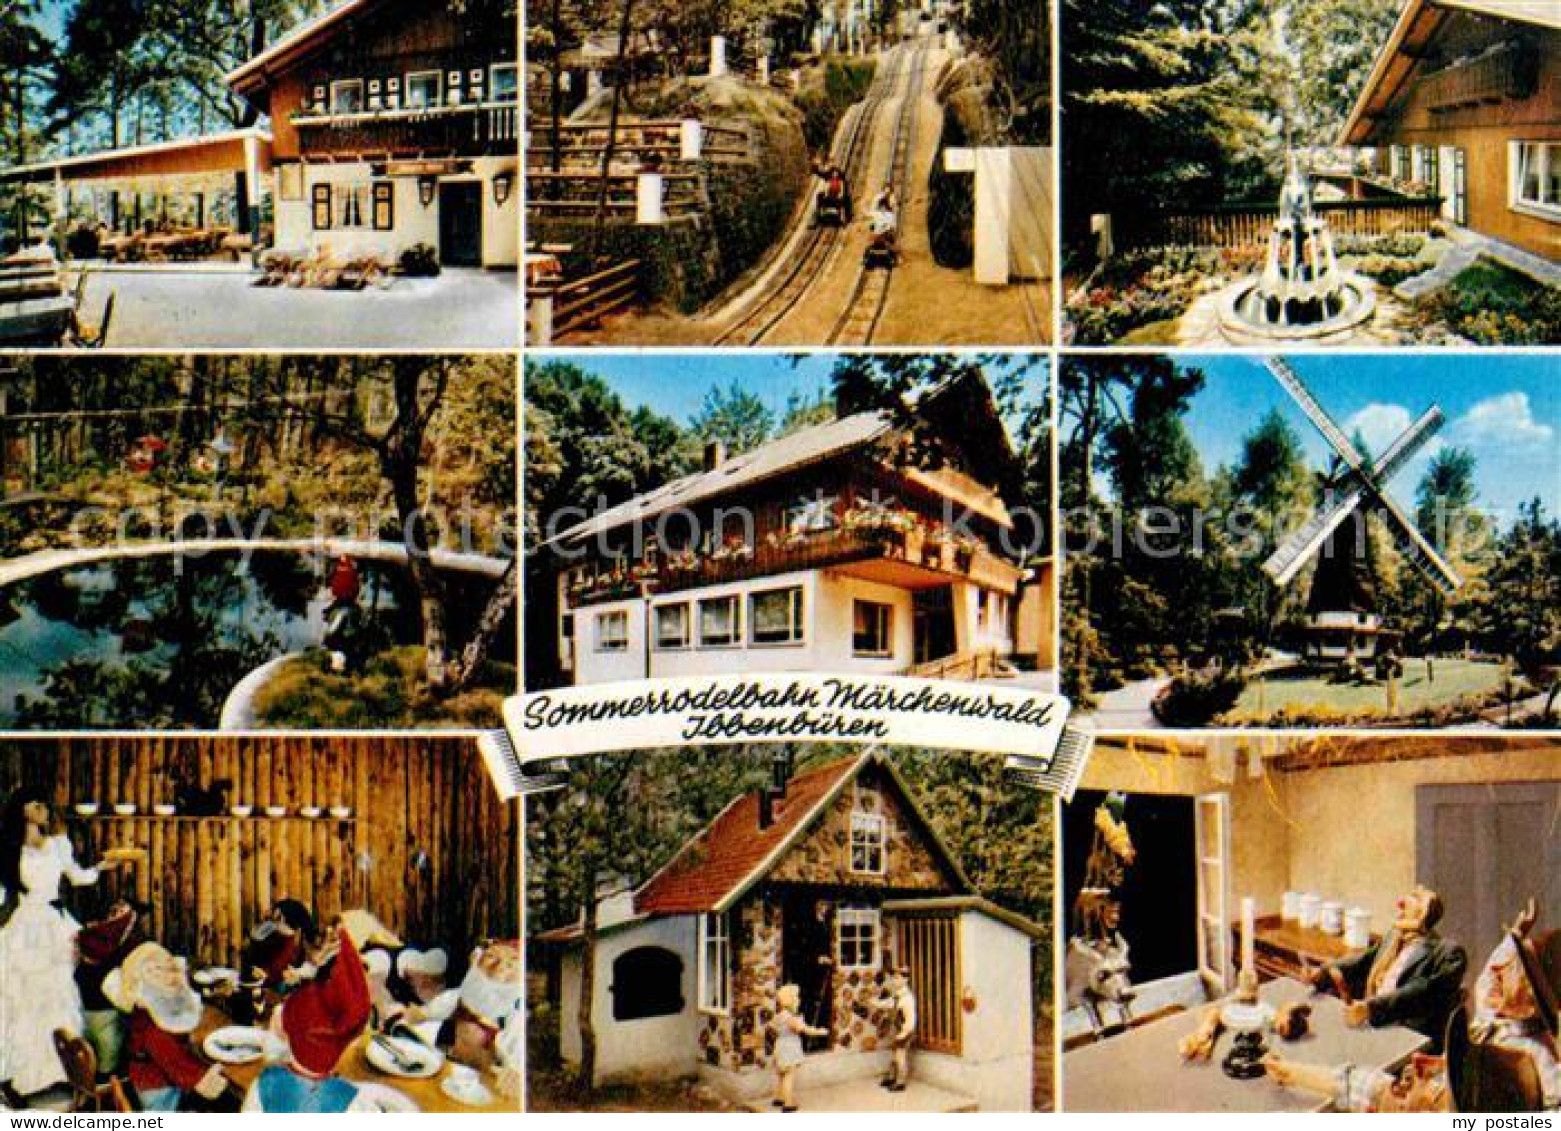 72692775 Ibbenbueren Sommerrodelbahn Maerchenwald Gaststaette Restaurant Windmue - Ibbenbueren